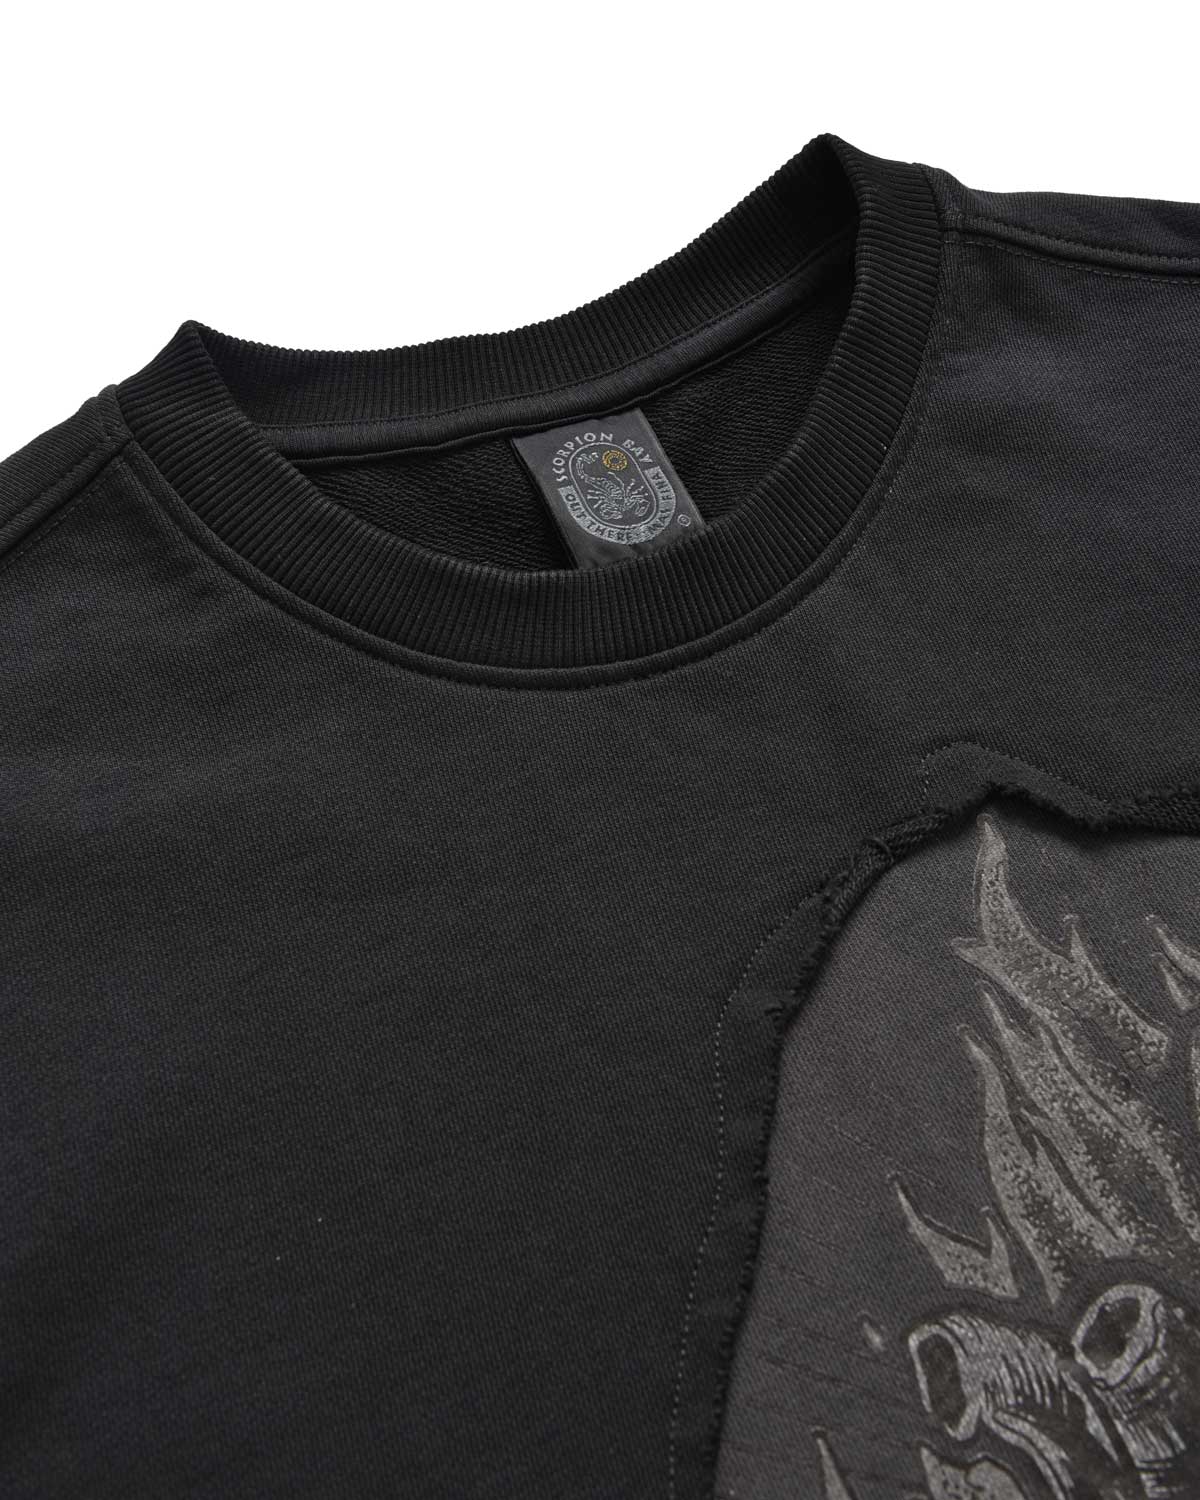 Man | Black Crewneck Sweatshirt In 100% Cotton With “Corazon Espinado” Print